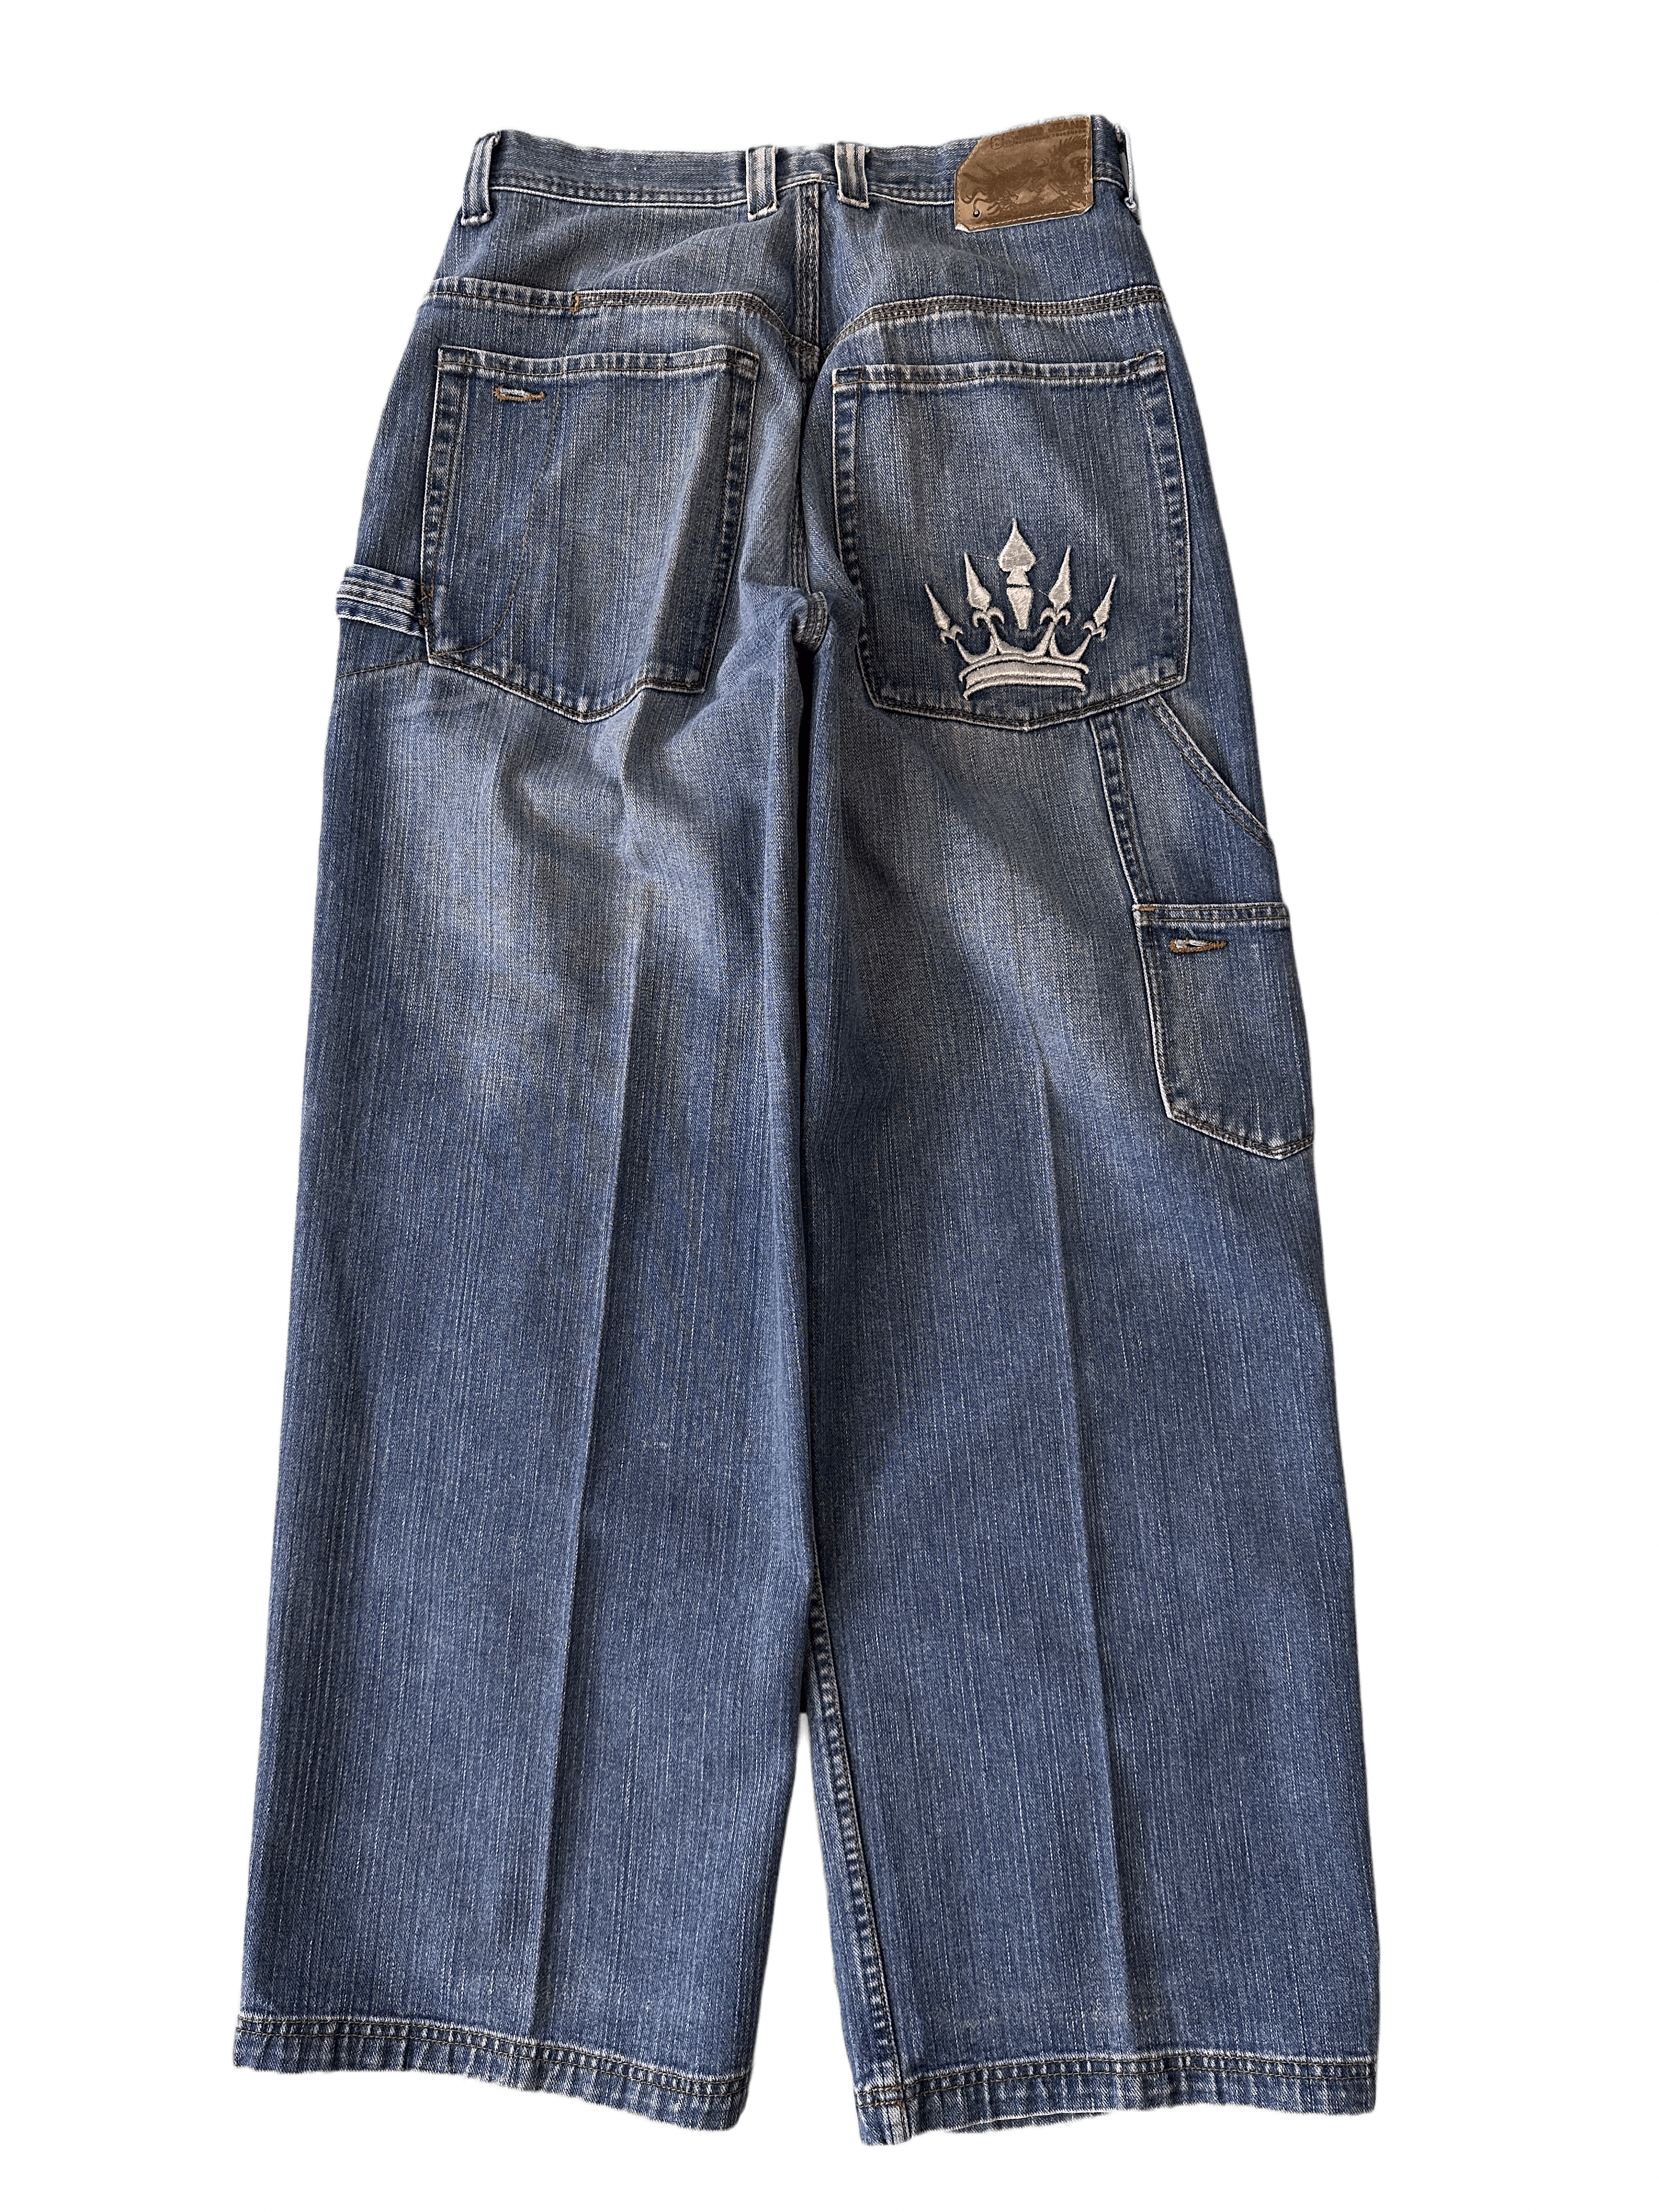 respektfuld Tak for din hjælp Trofast JNCO Crown Vintage Baggy Jeans - 33 x 32